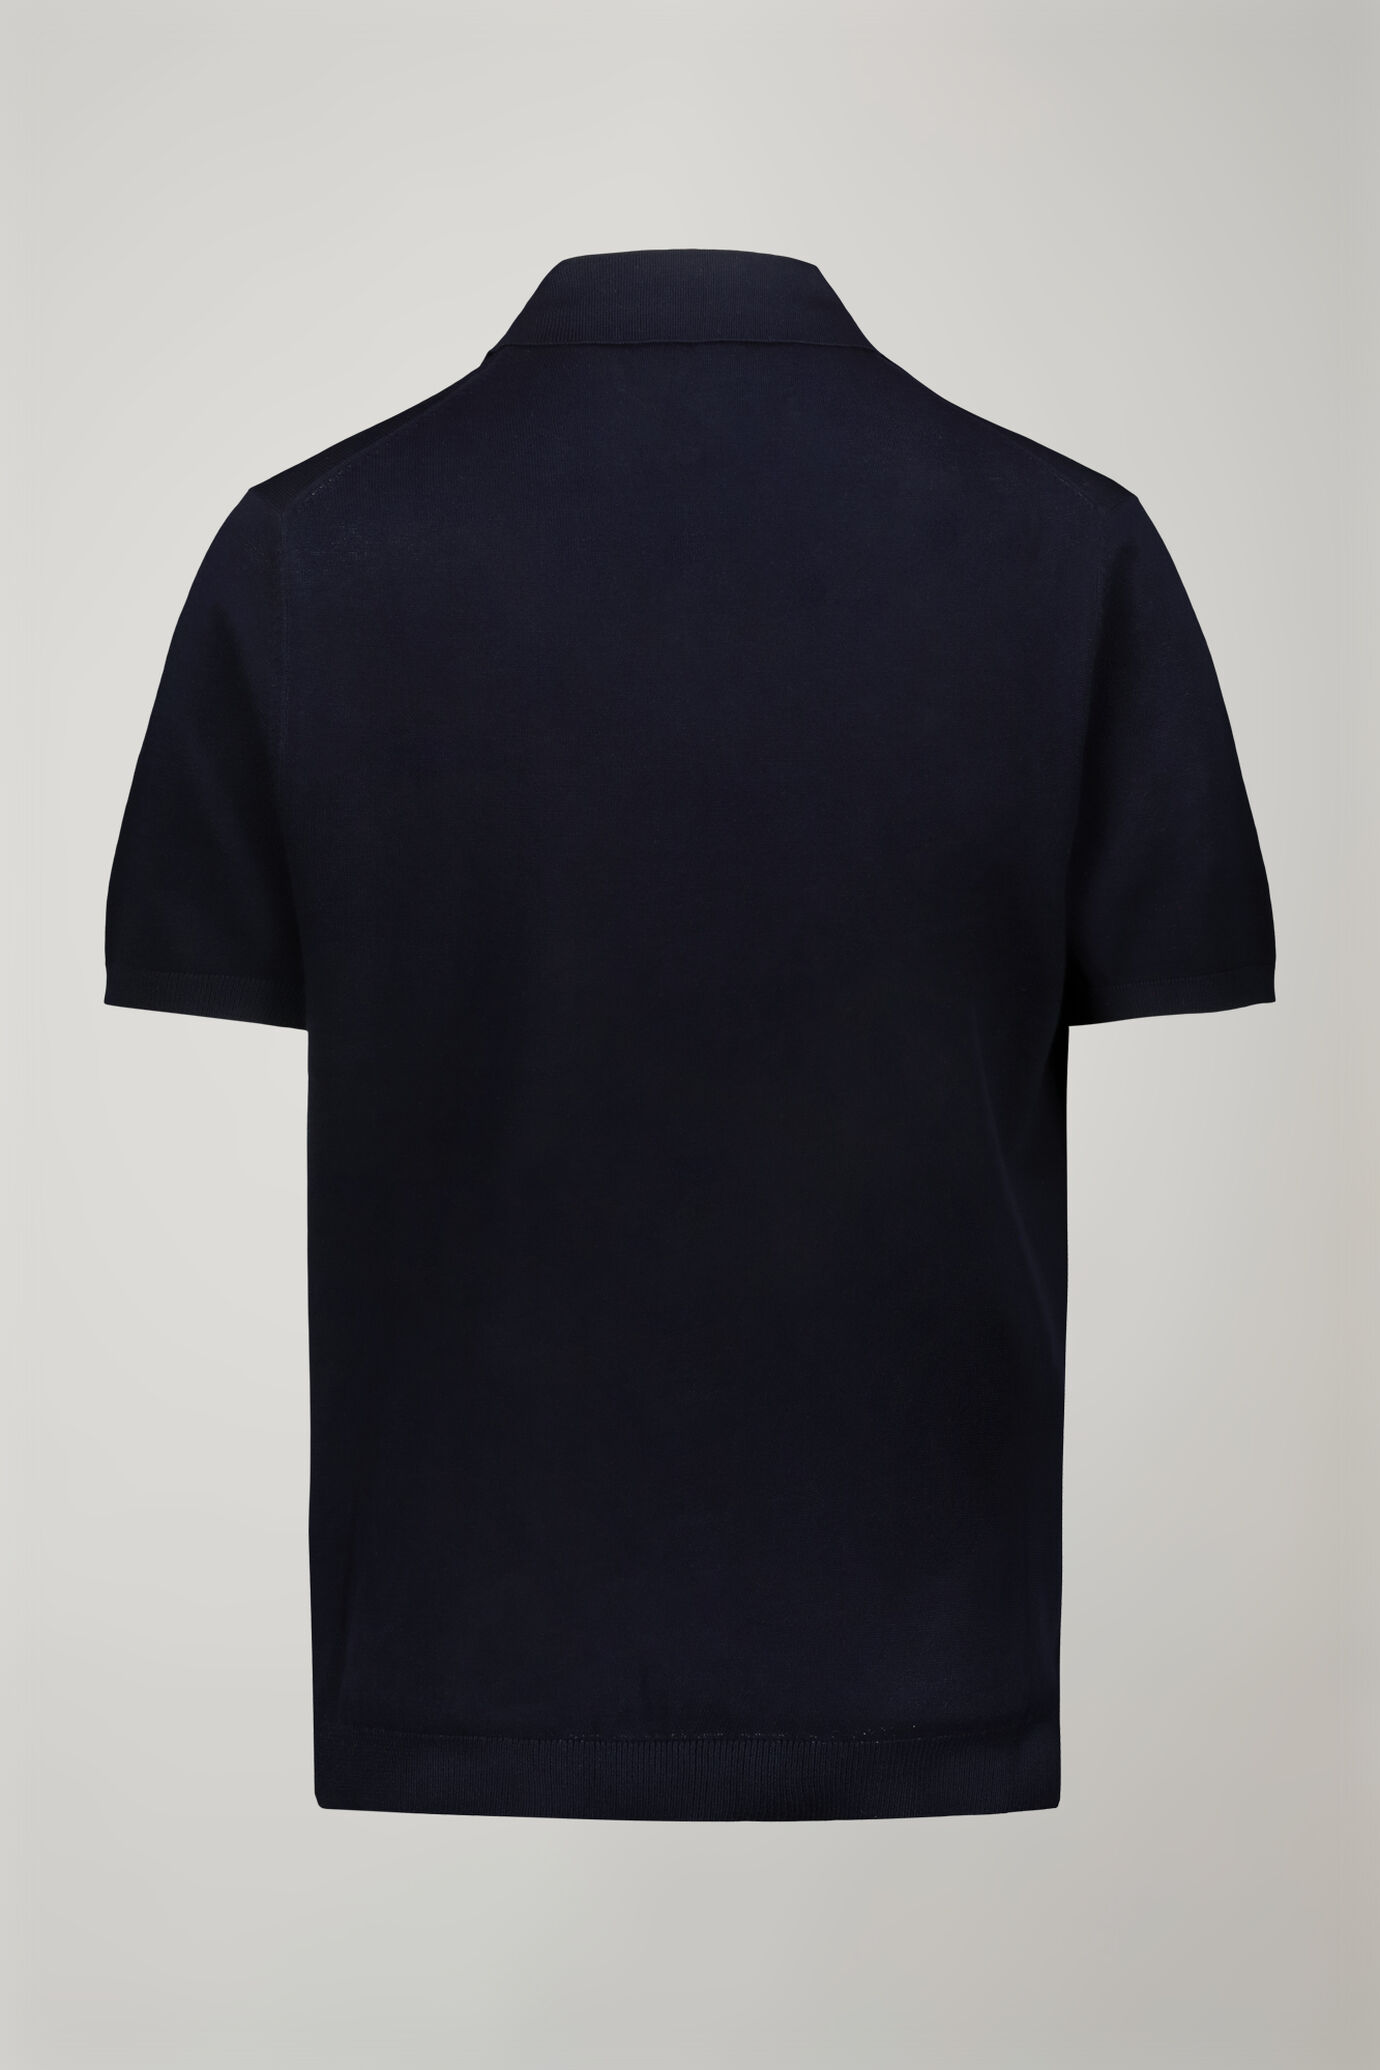 Herren-Poloshirt aus 100 % Baumwolle mit kurzen Ärmeln und Derbykragen in normaler Passform image number 5